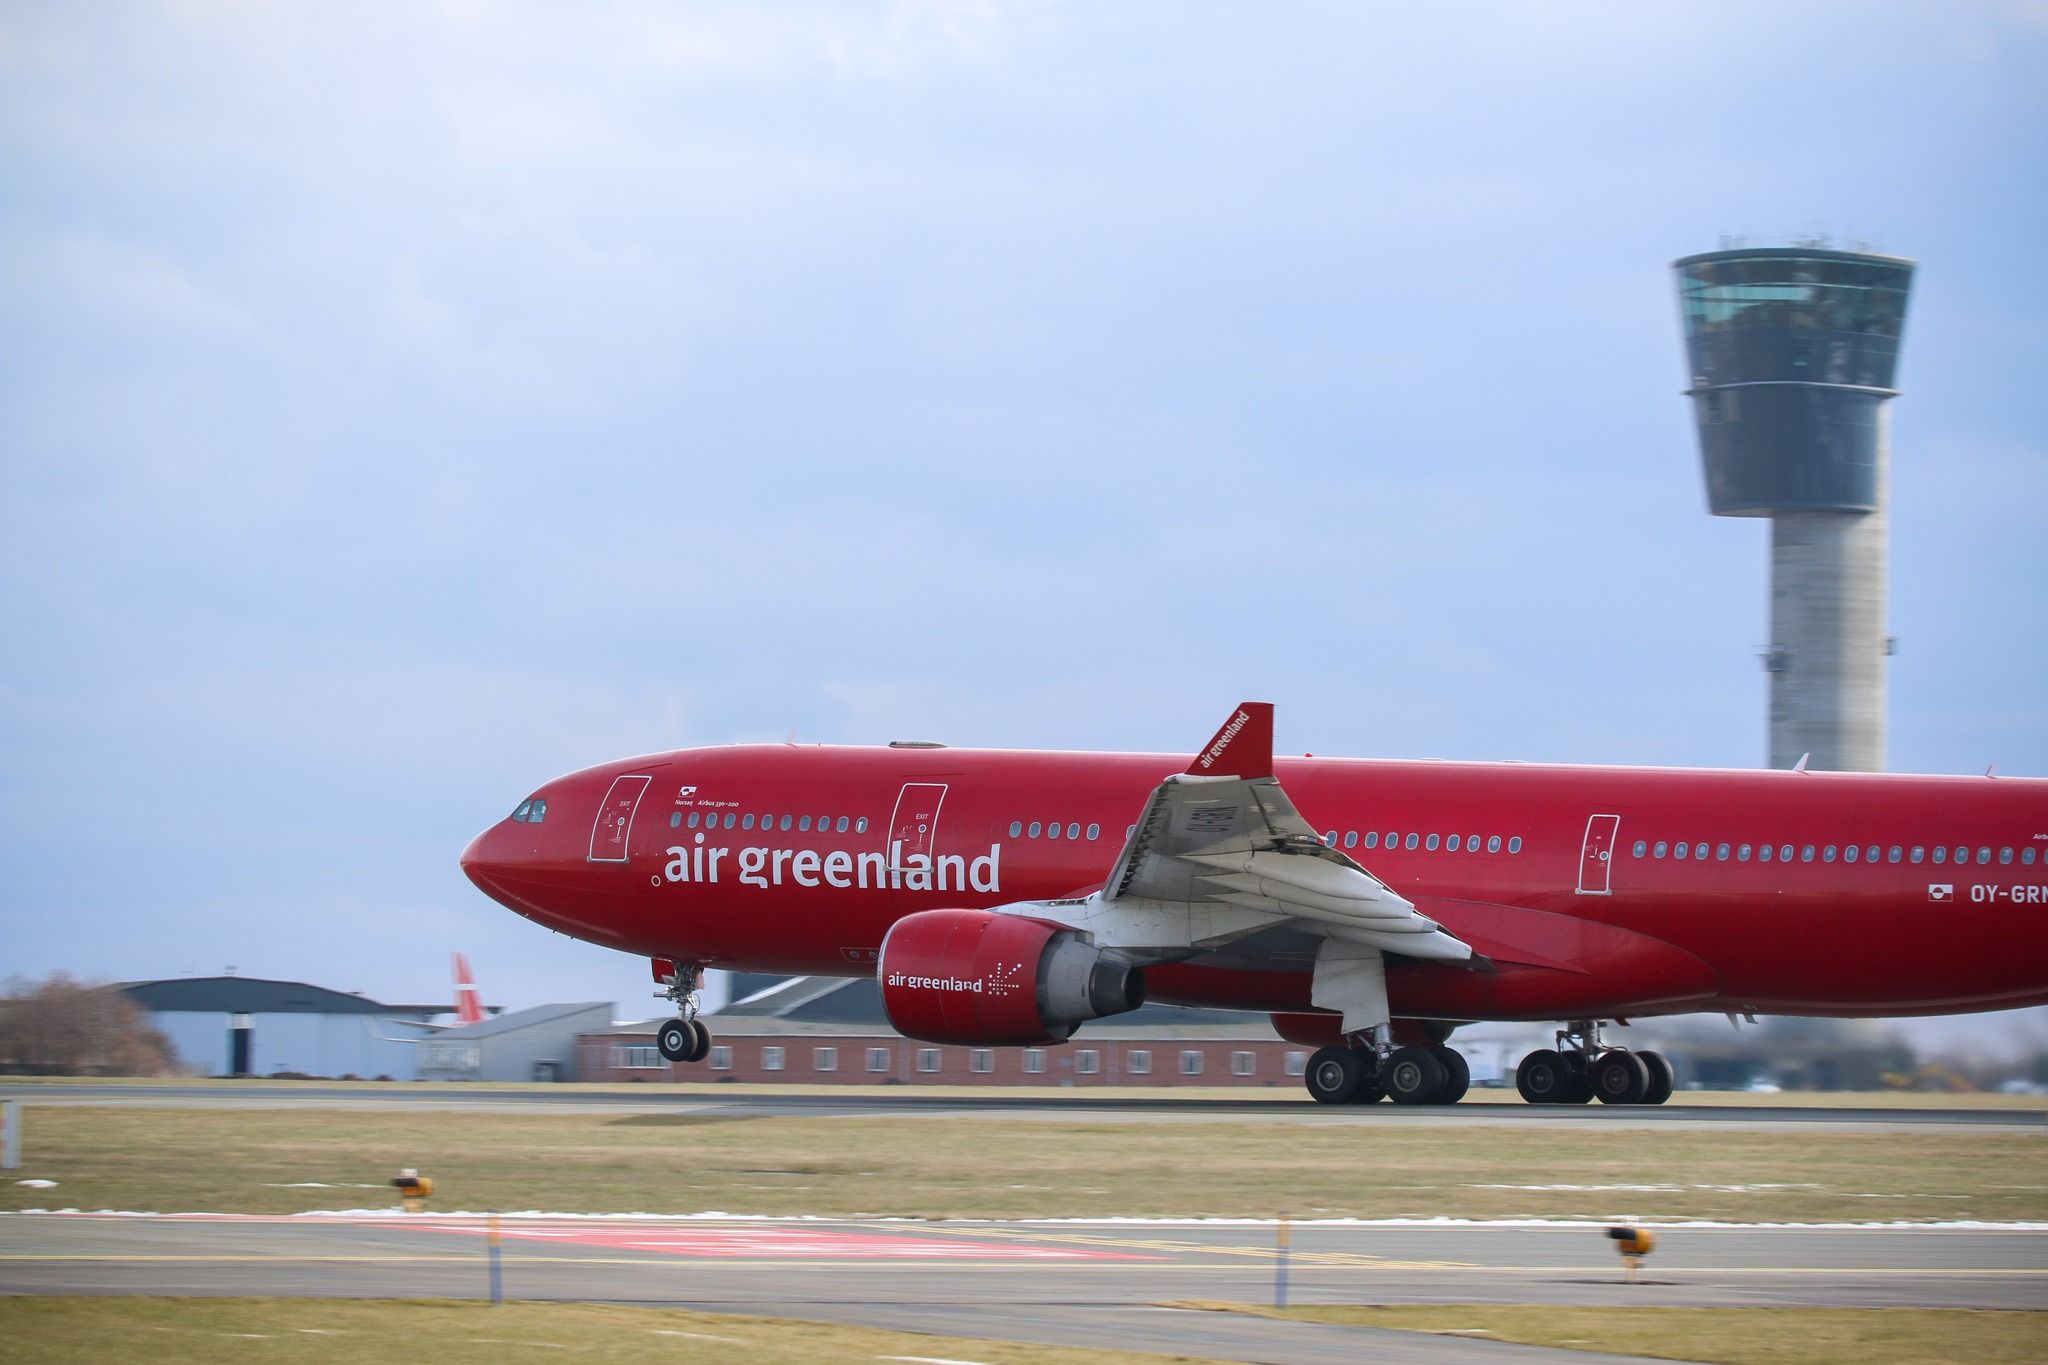 OY-GRN Air Greenland A330-200 takeoff